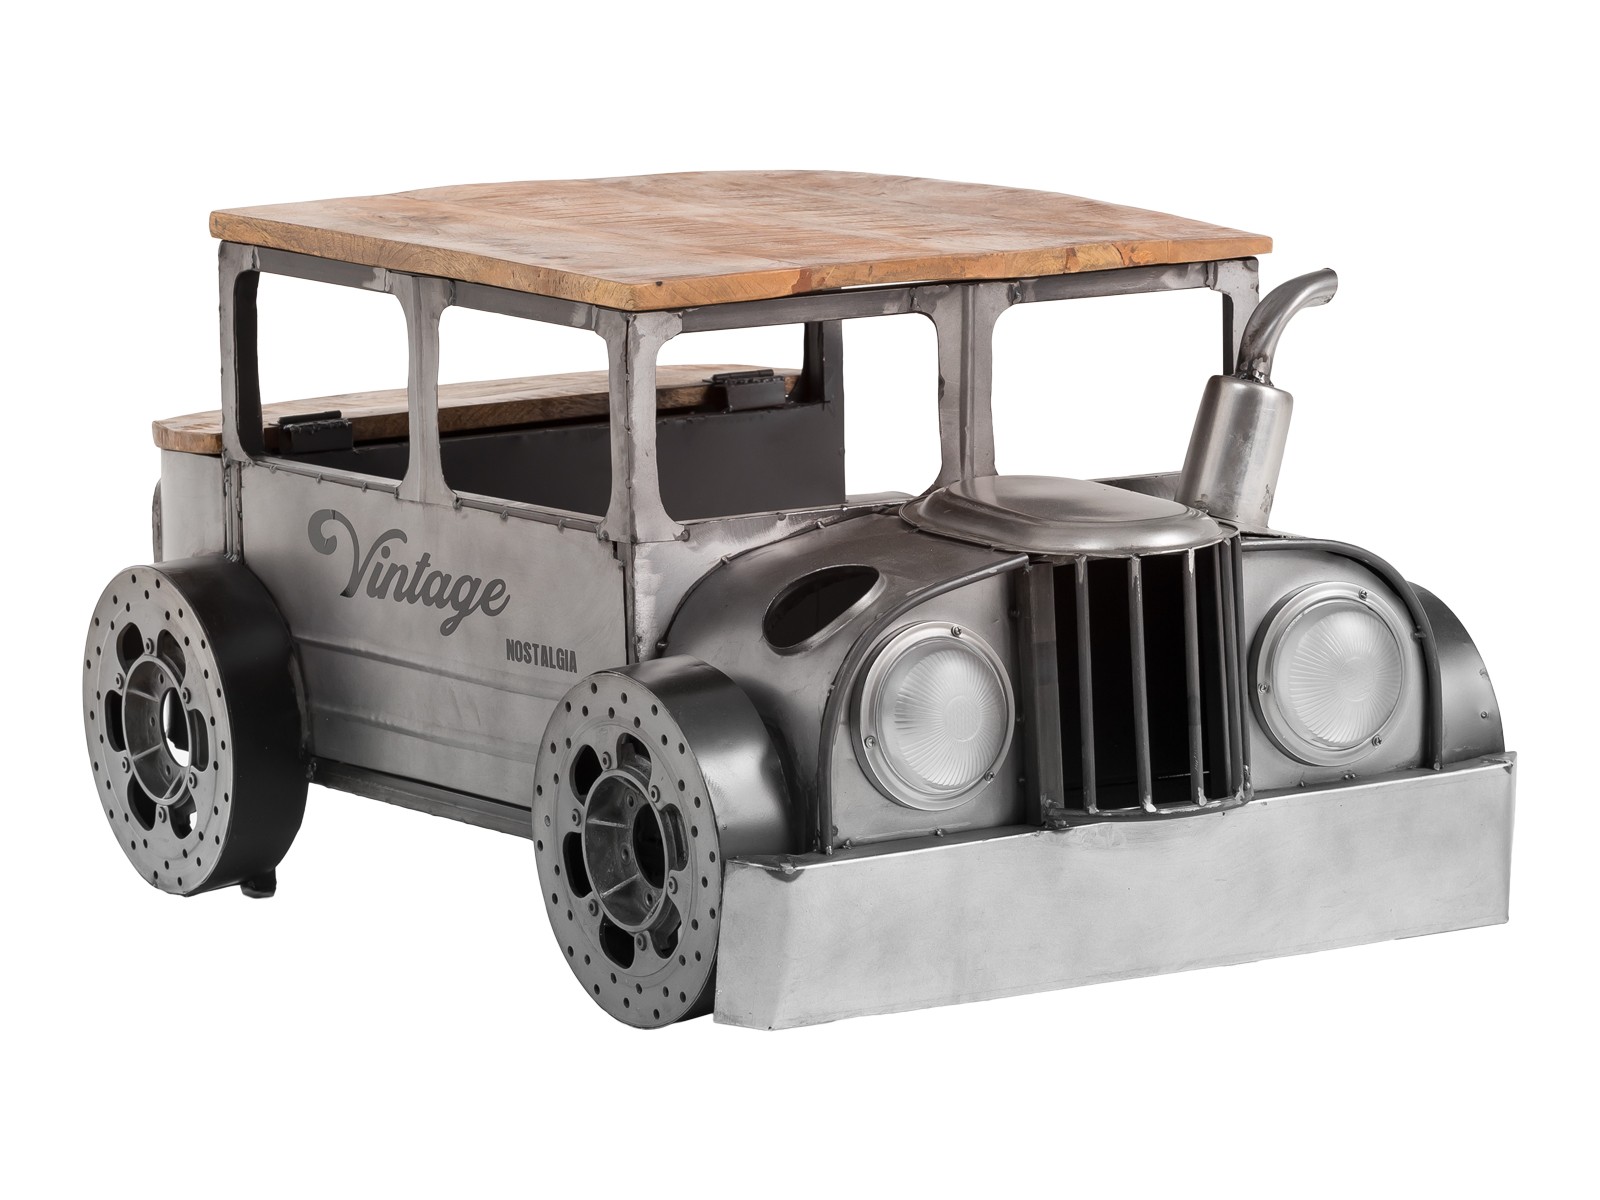 Šedý kovový konferenční stolek s dřevěnou deskou auto Vintage - 102*65*48cm A00001164